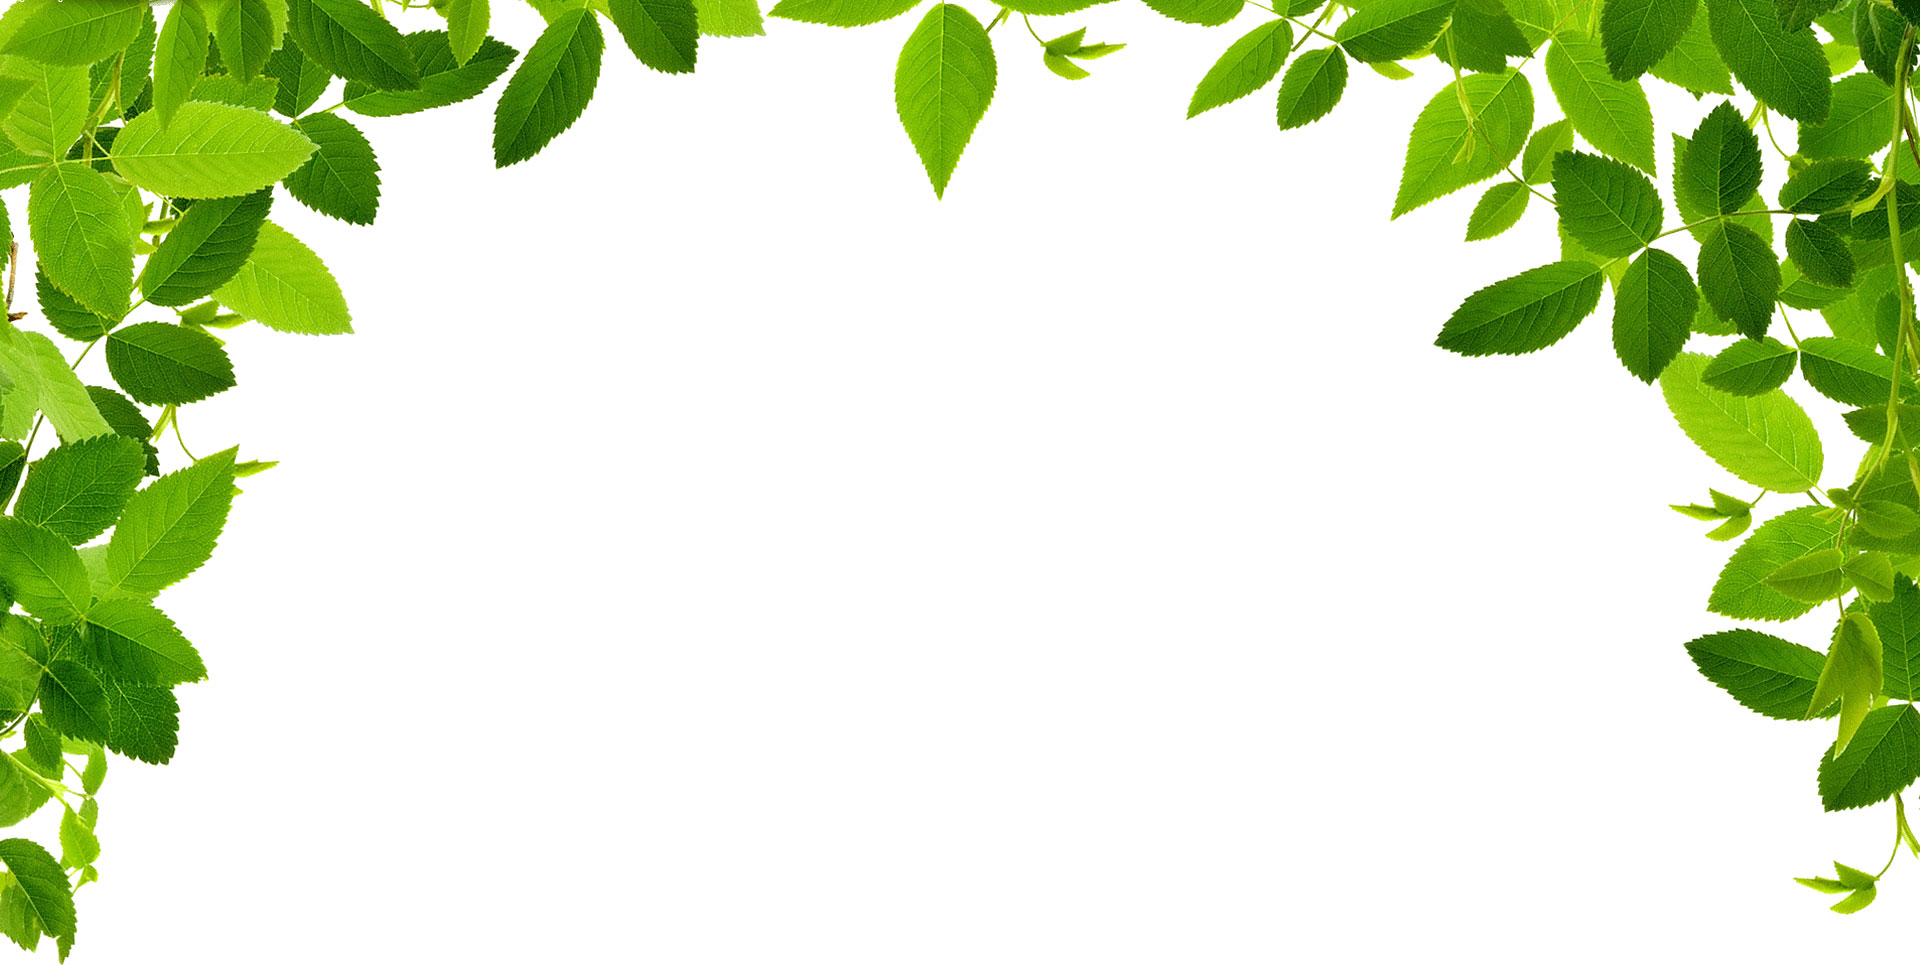 葉っぱ 草木のイラスト フリー素材 フレーム枠no 142 緑のカーテン 葉